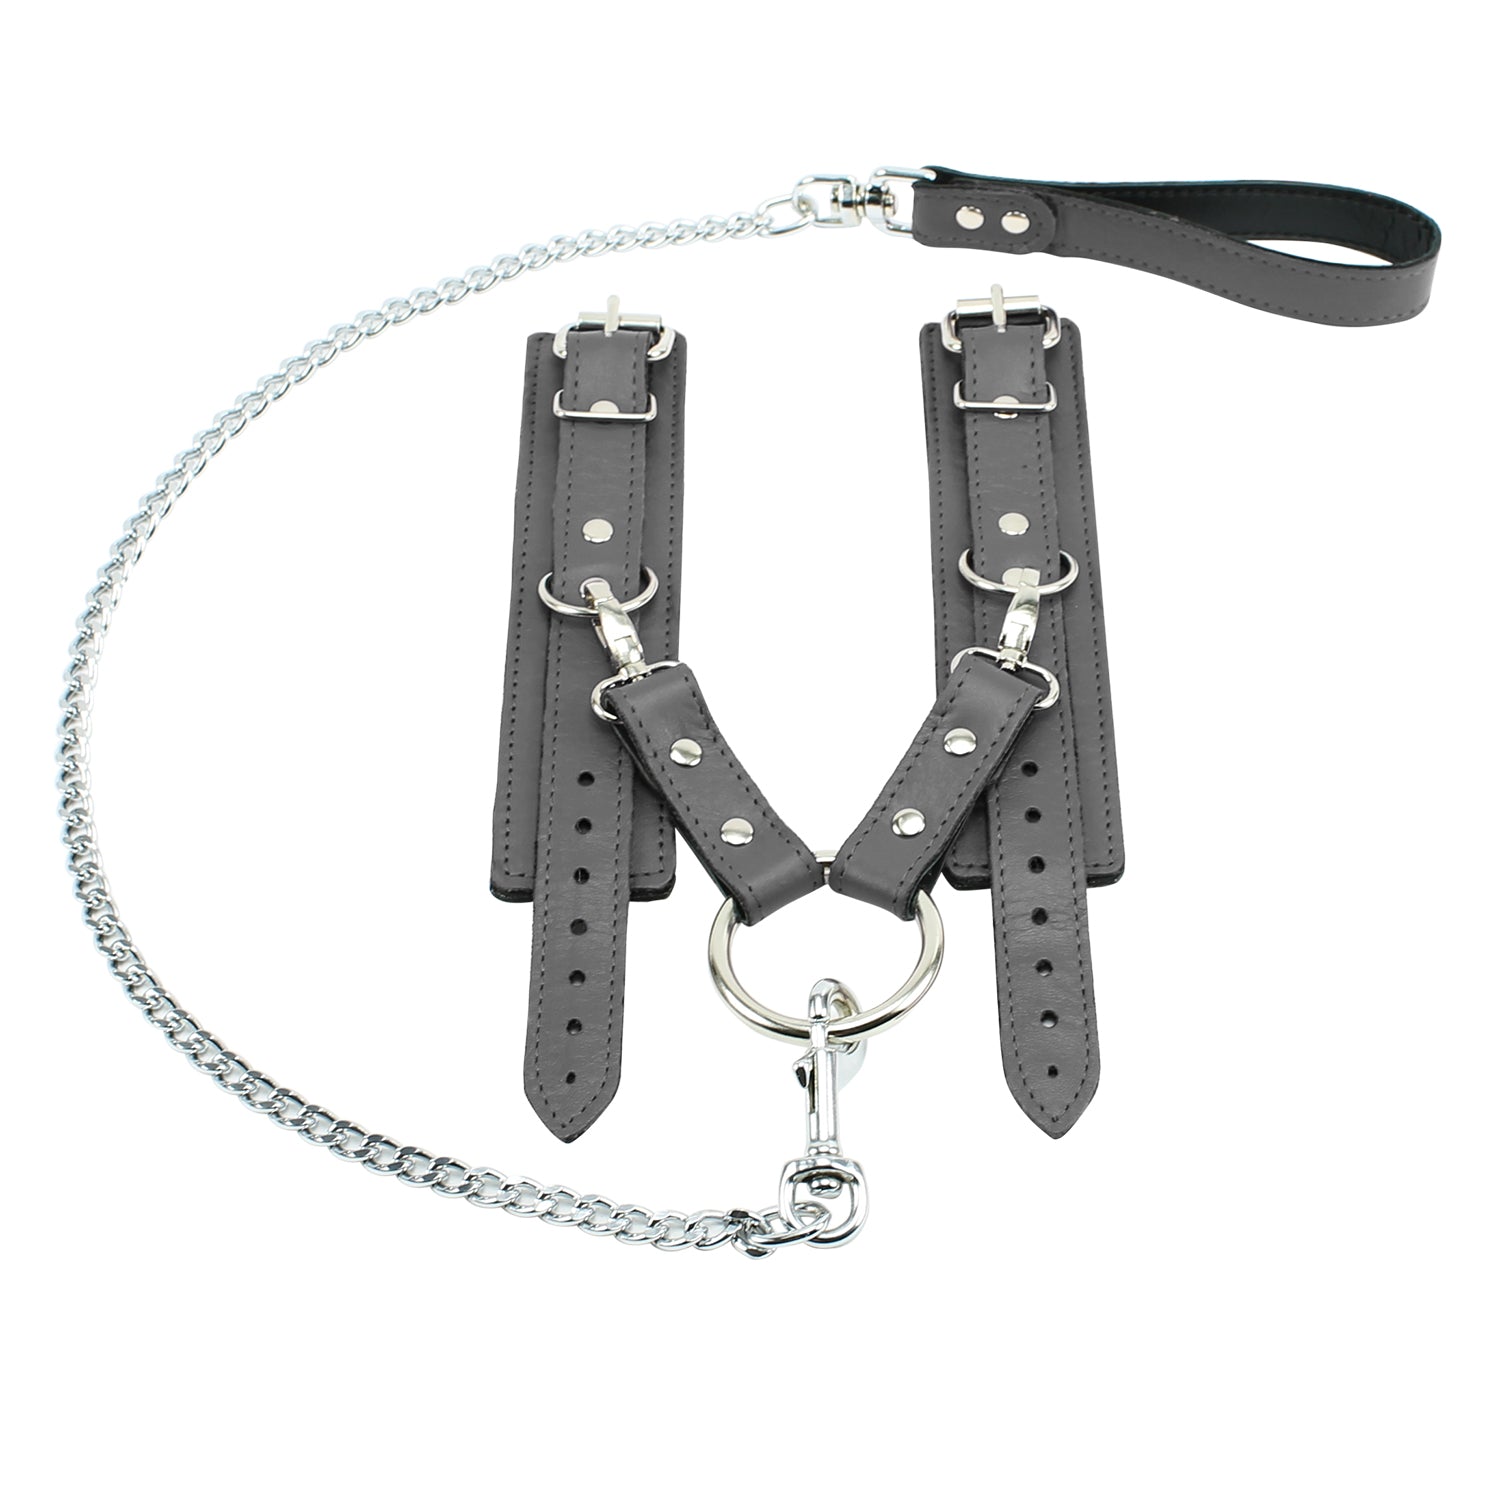 Berlin BDSM Cuffs Hogtie Set Gray Leather